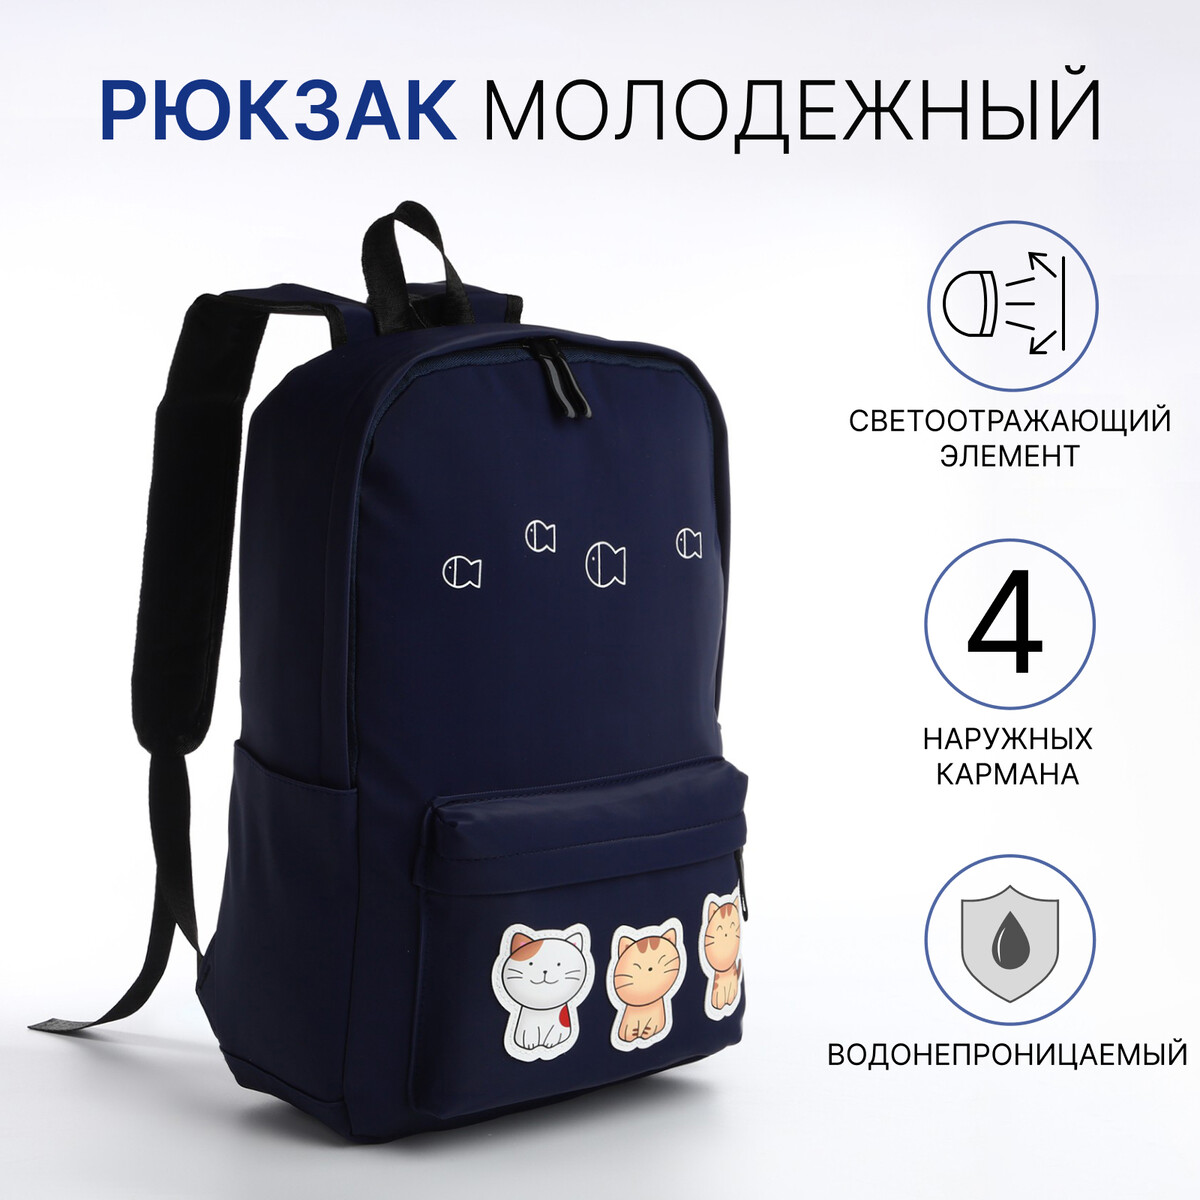 Рюкзак молодежный из текстиля на молнии, 4 кармана, цвет синий рюкзак молодежный из текстиля на молнии 3 кармана сумка держатель для чемодана синий